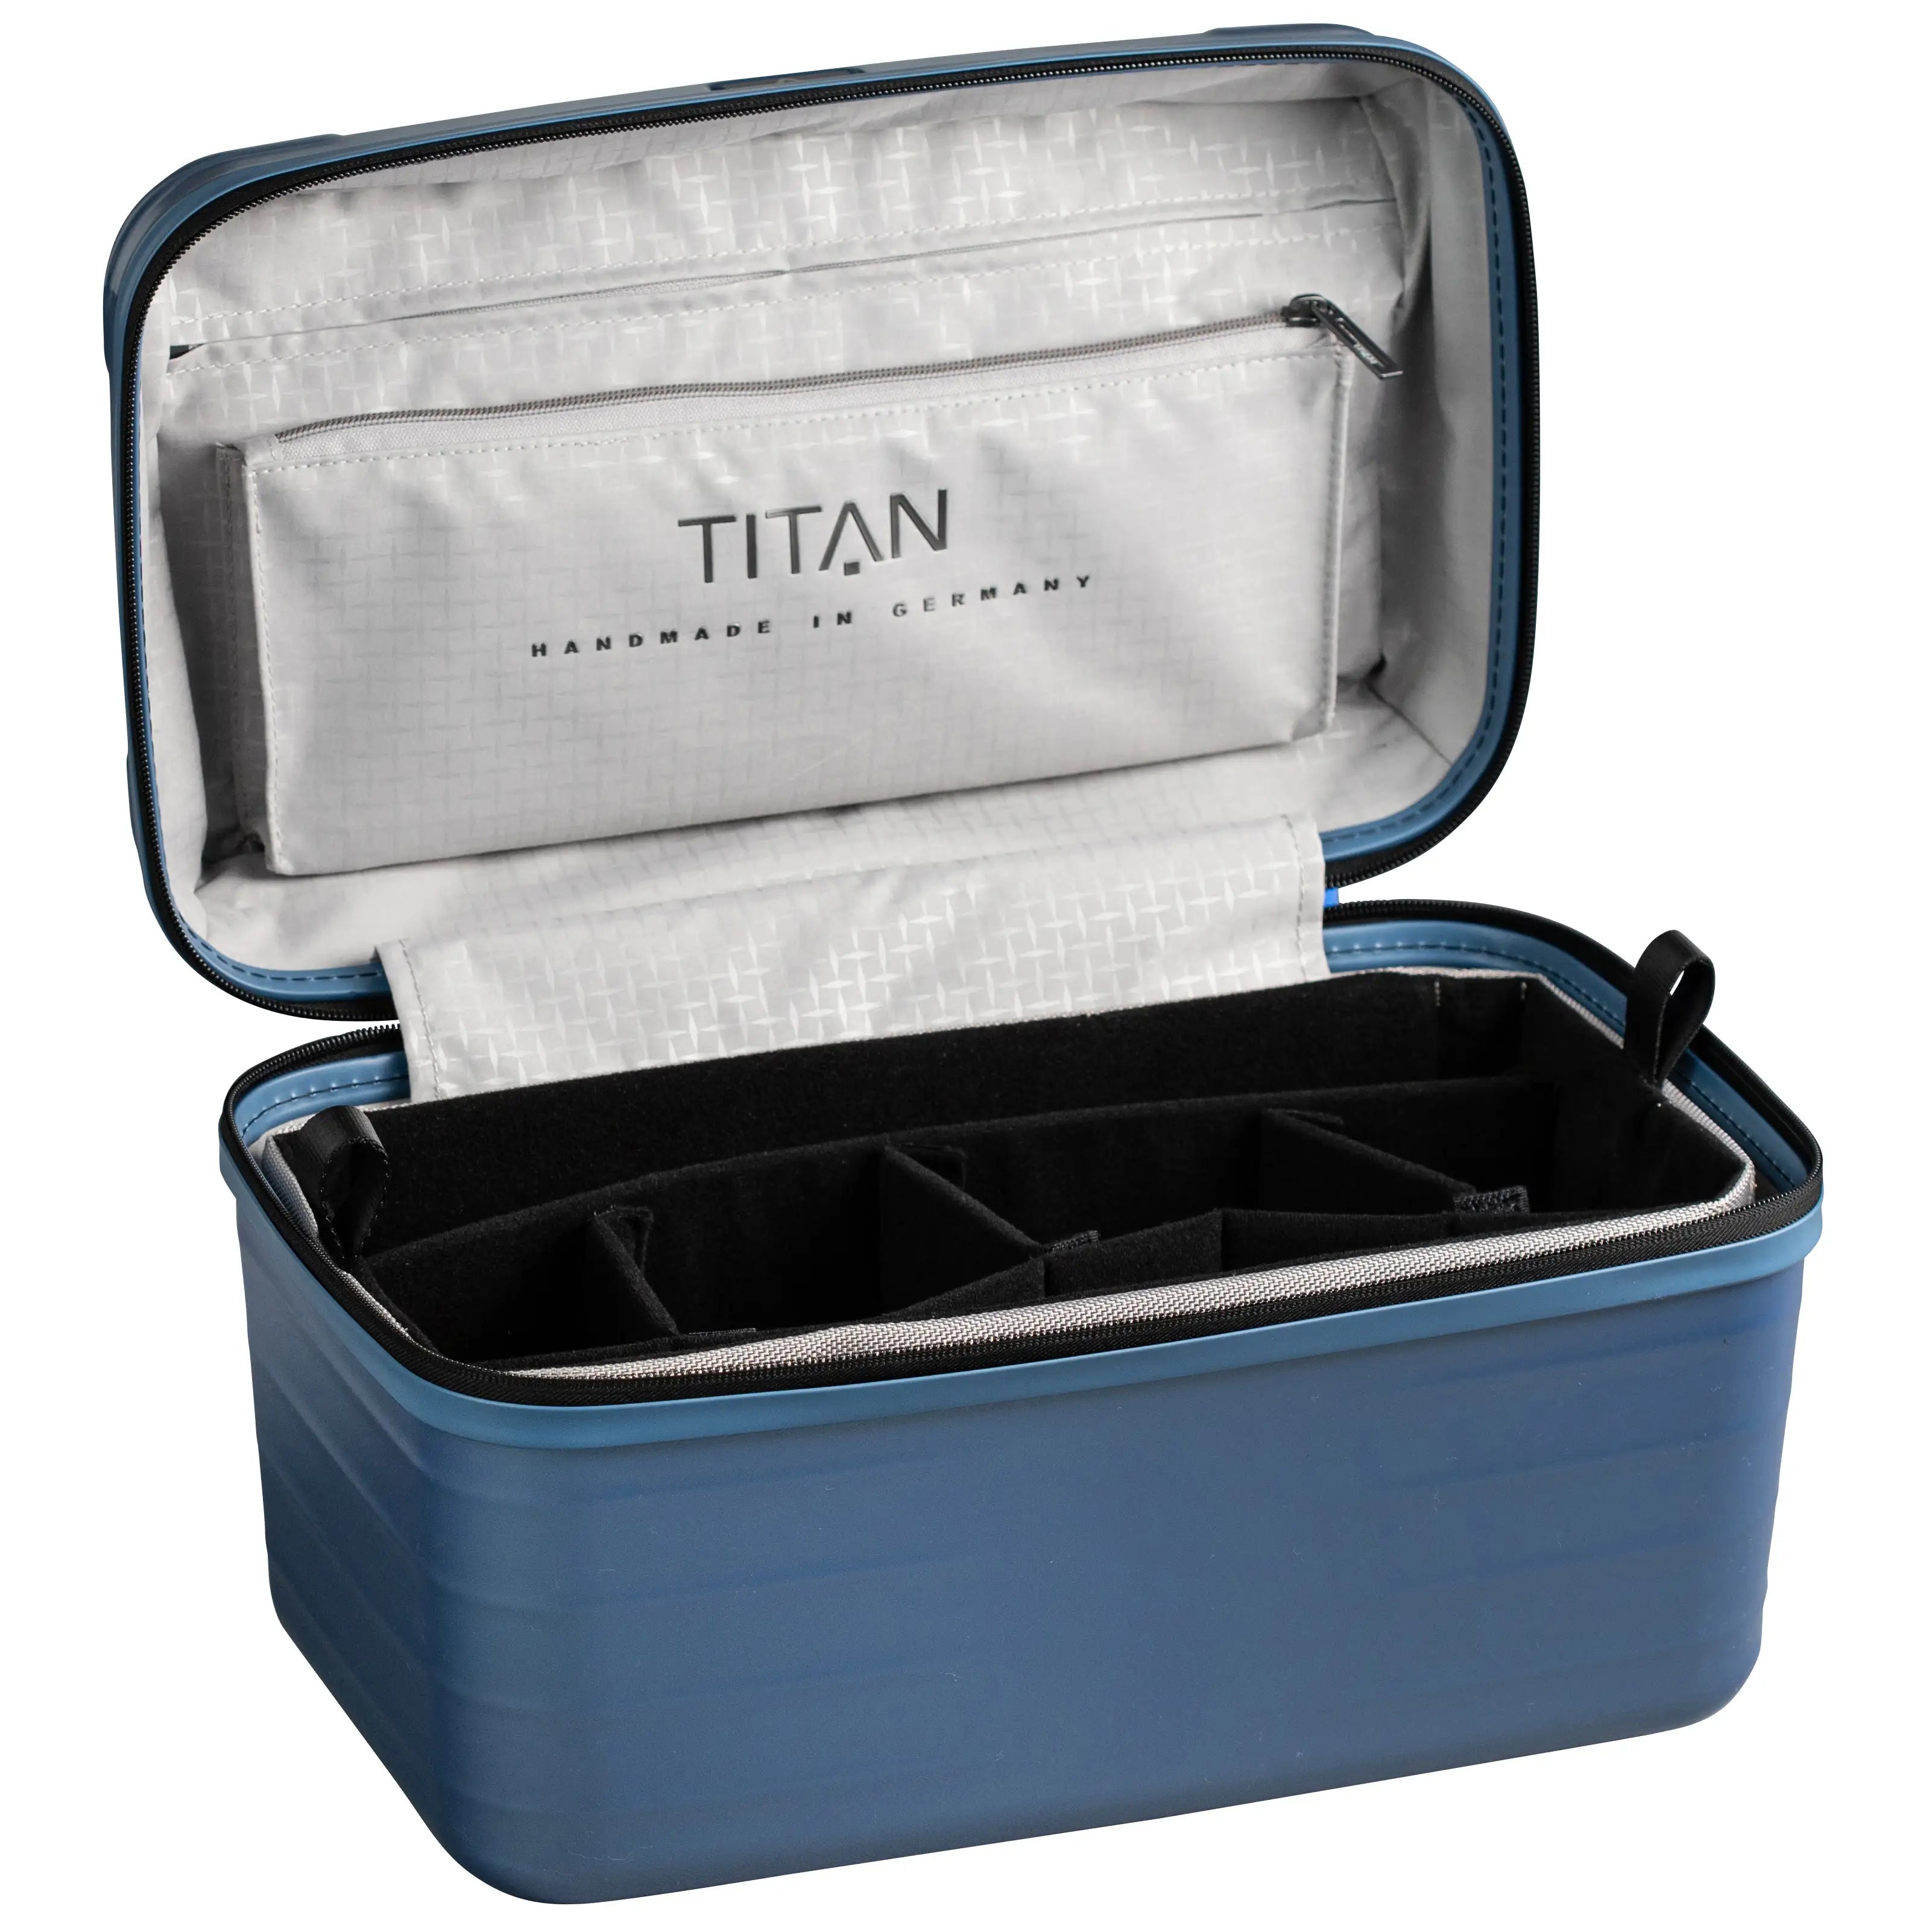 Titan Litron Beautycase - Ice blue